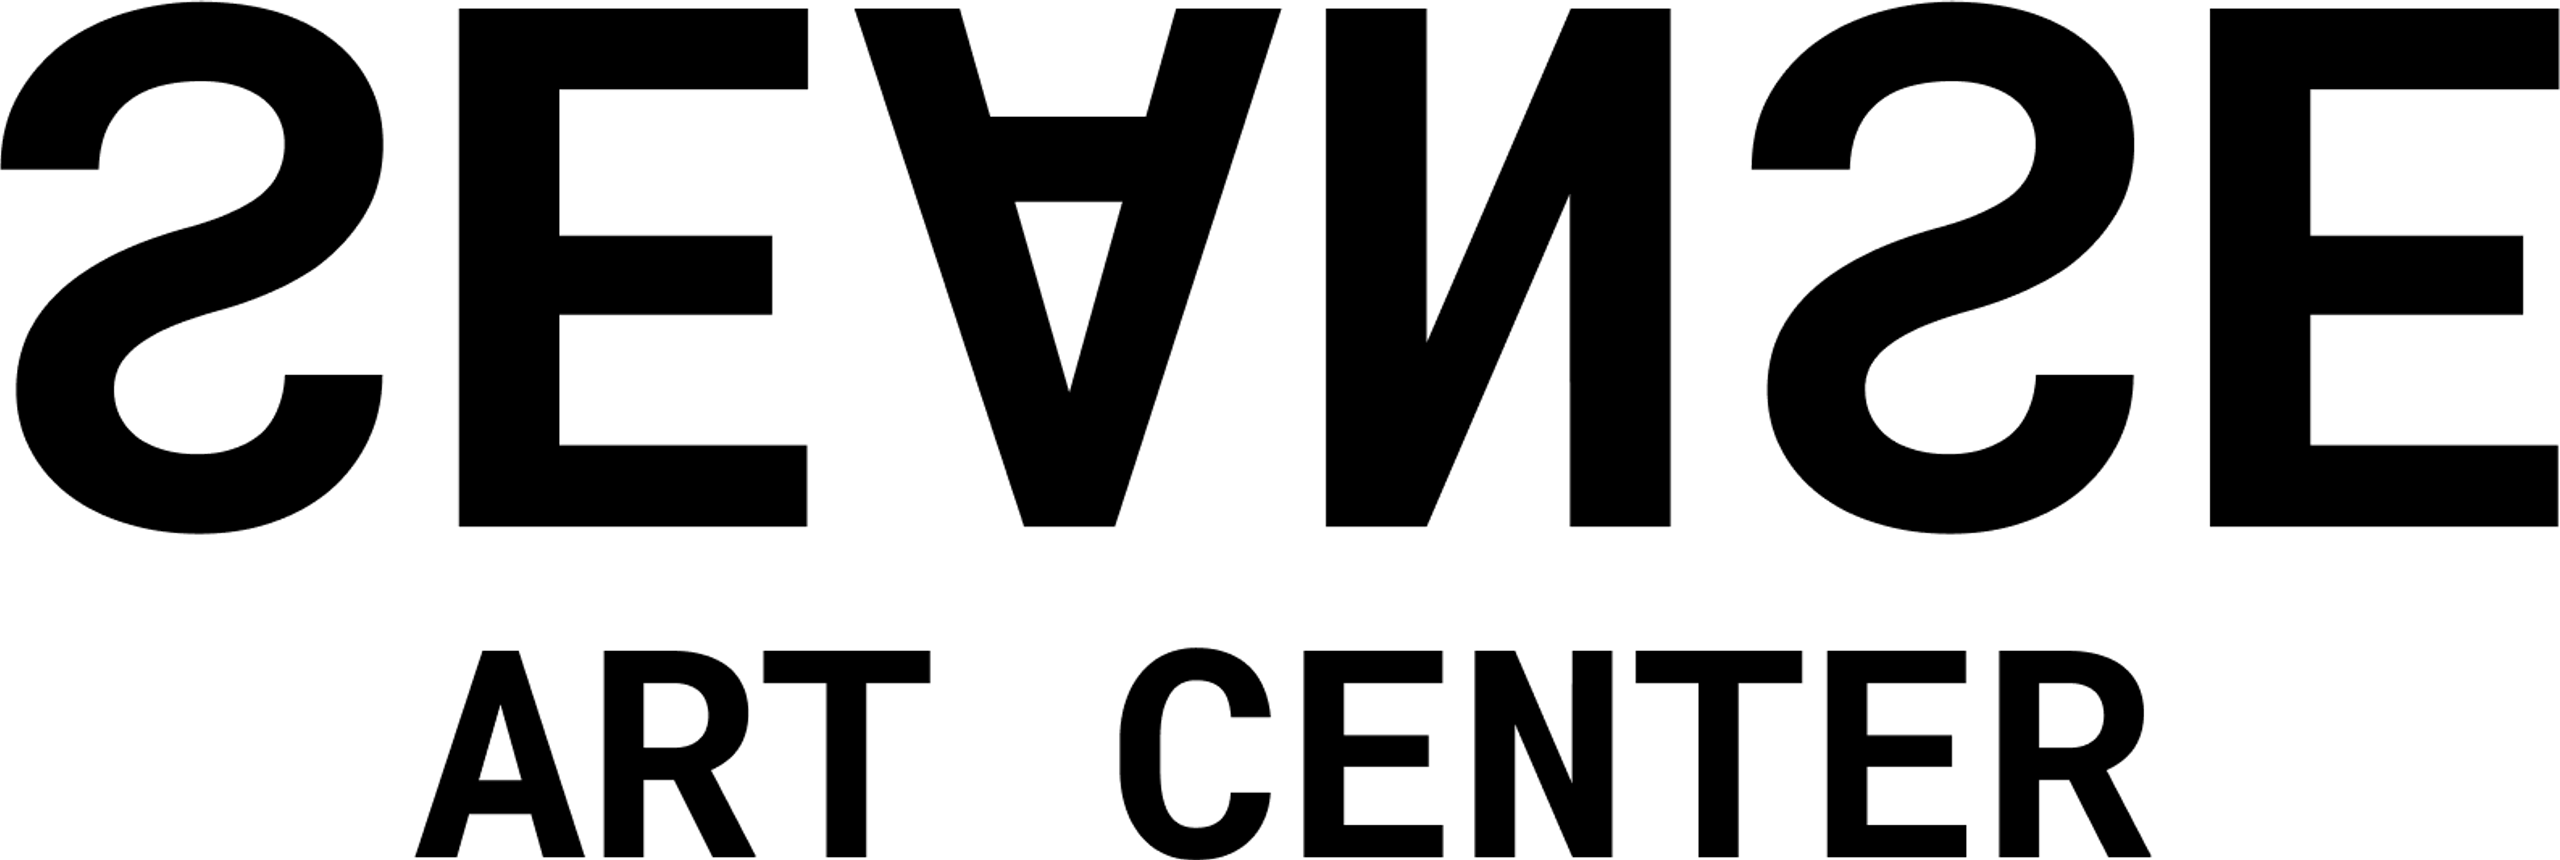 Seanse Art Center logo black